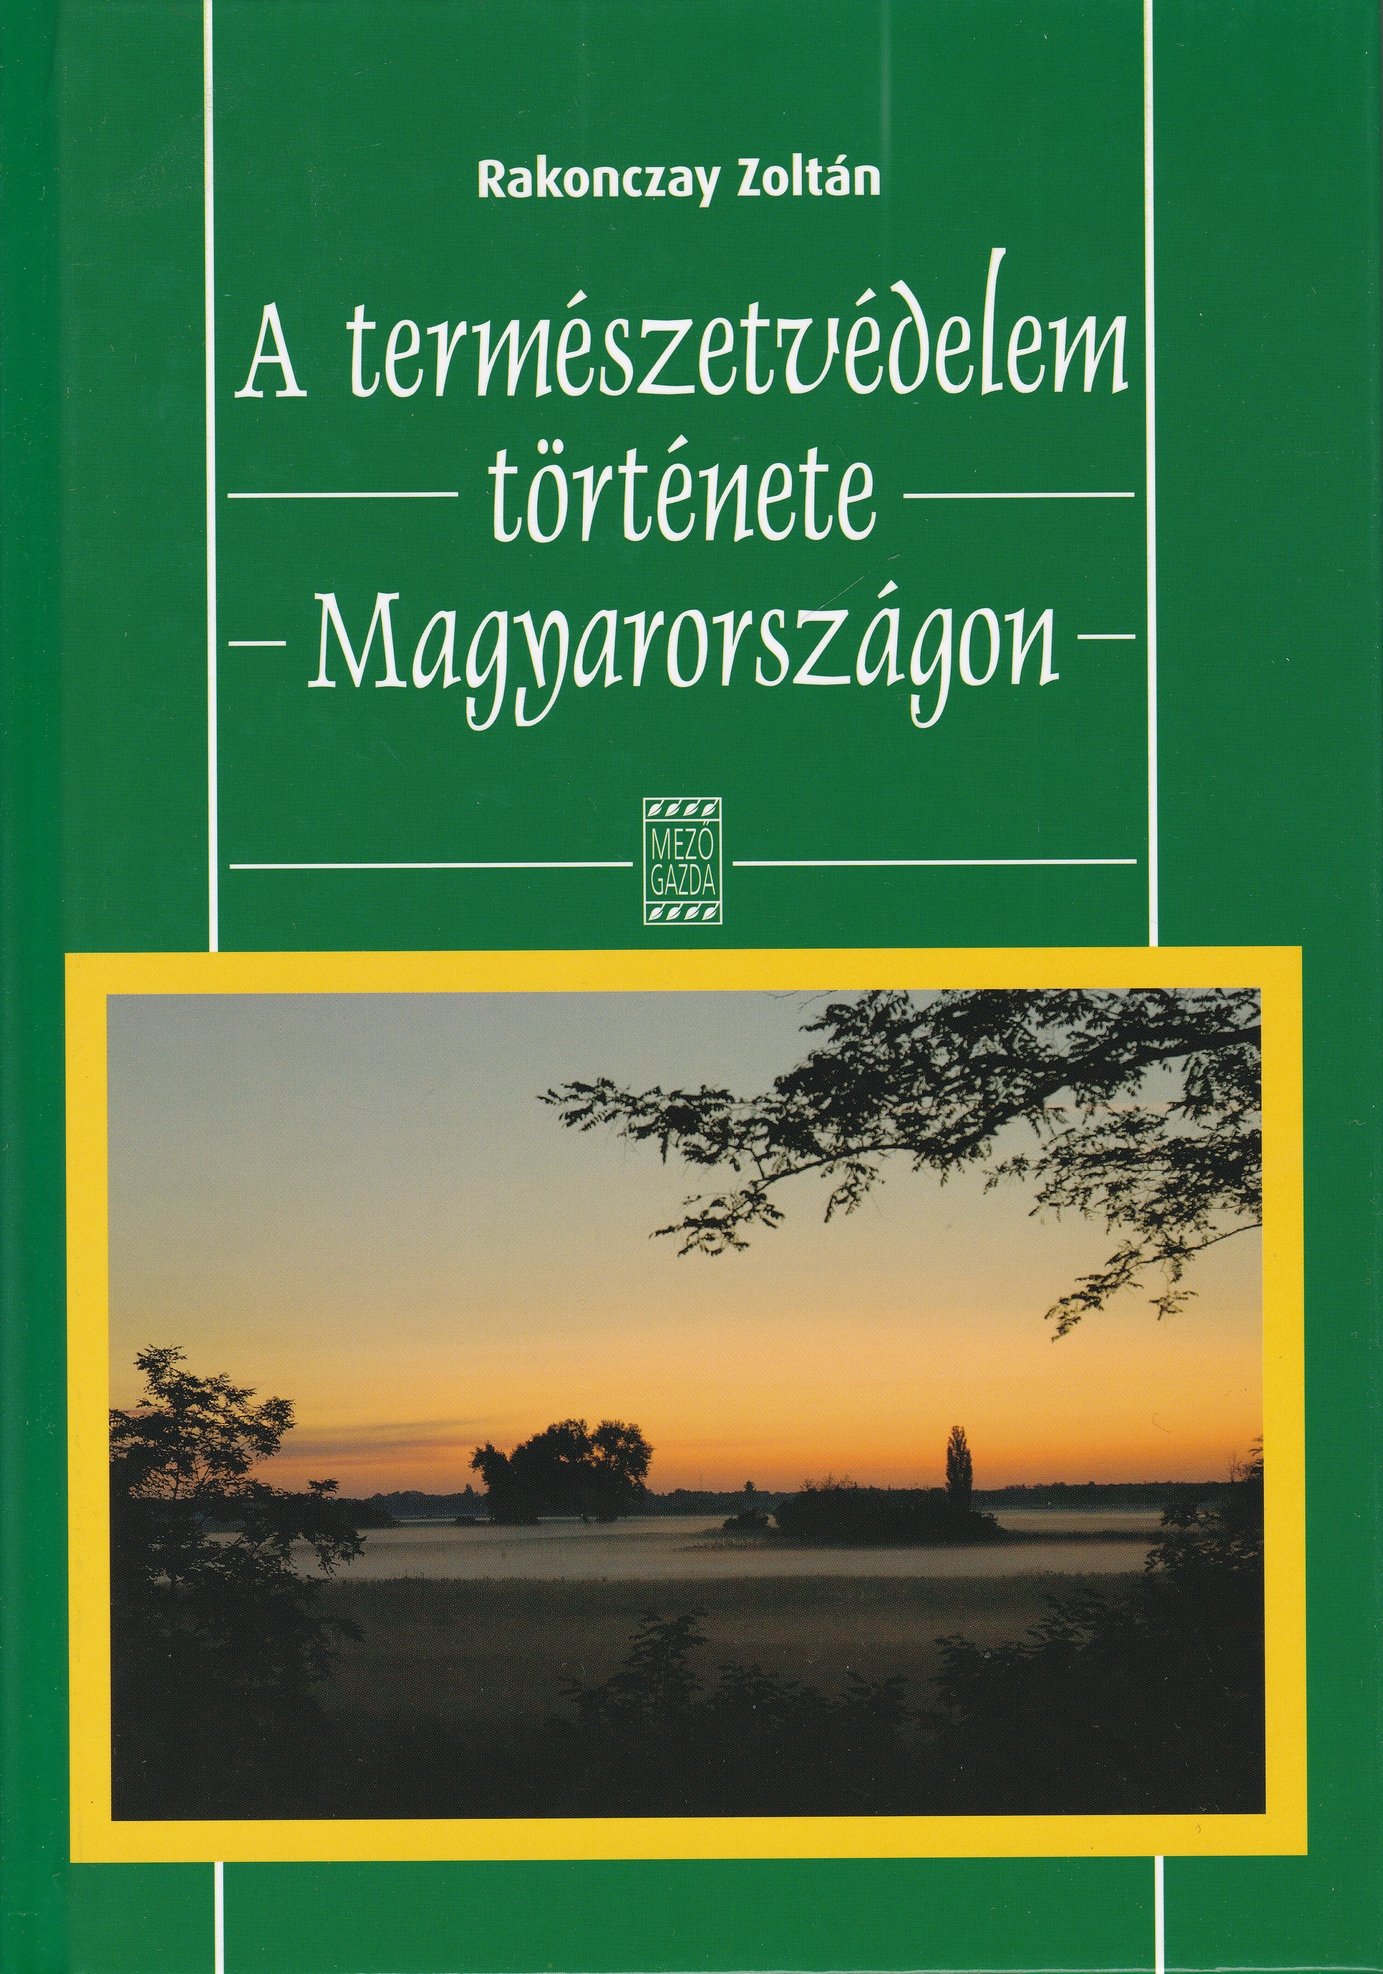 Rakonczay Zoltán: A természetvédelem története Magyarországon 1872-2002 (130 év) (Rippl-Rónai Múzeum CC BY-NC-ND)